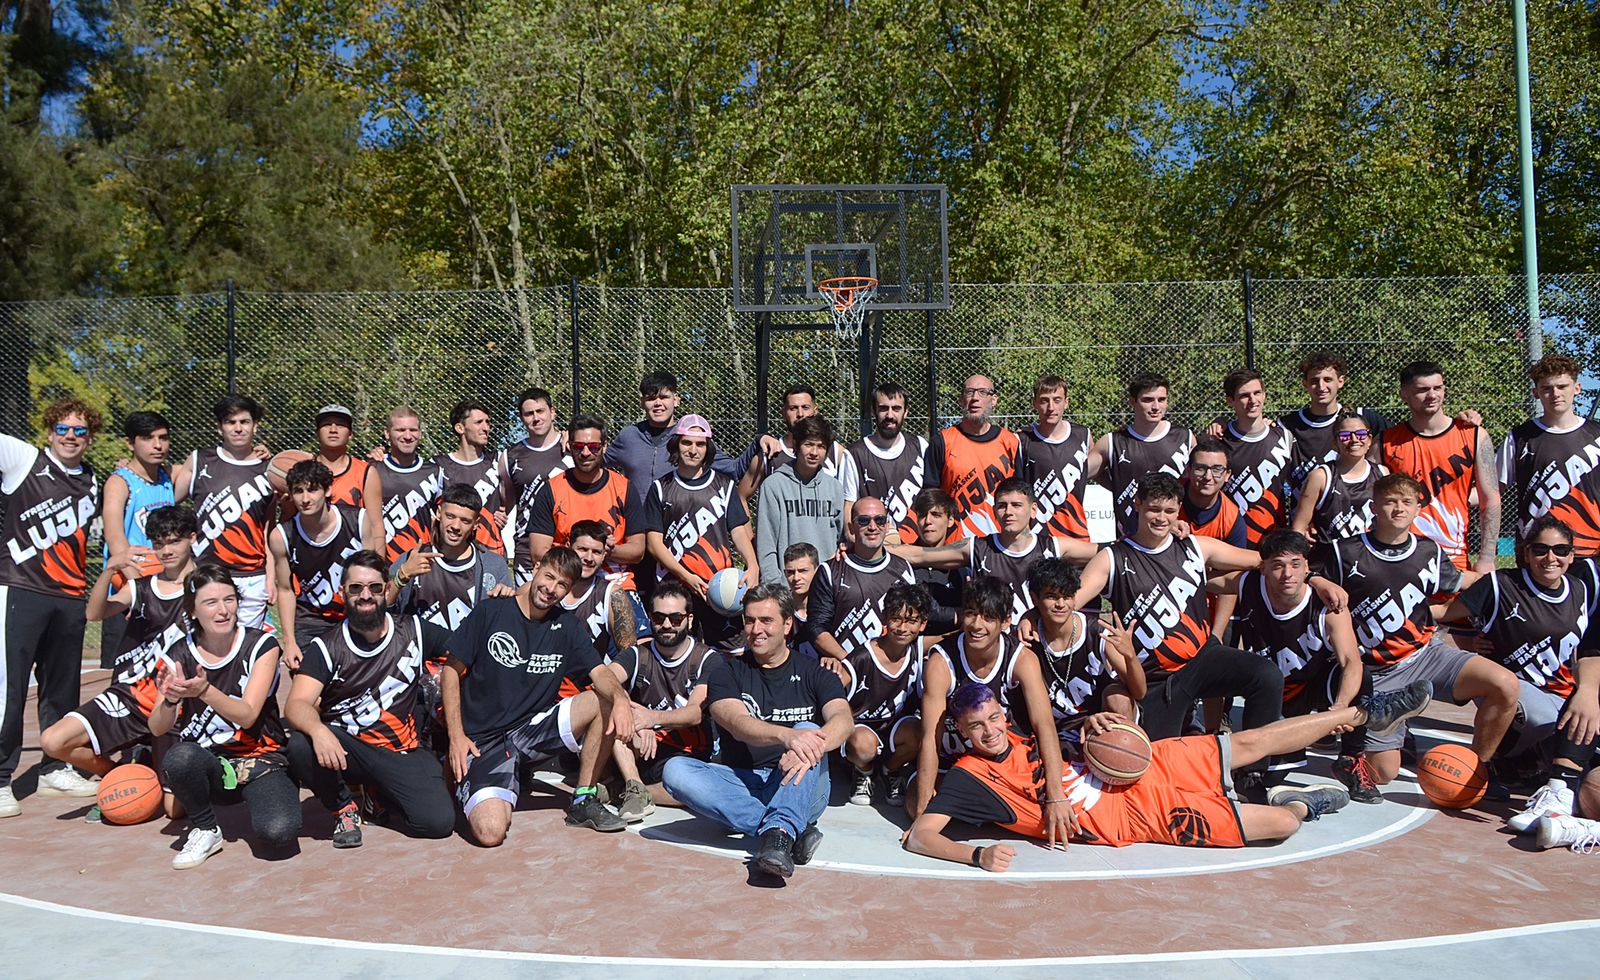 El Intendente inauguró dos nuevas canchas de básquet en el Parque San Martín